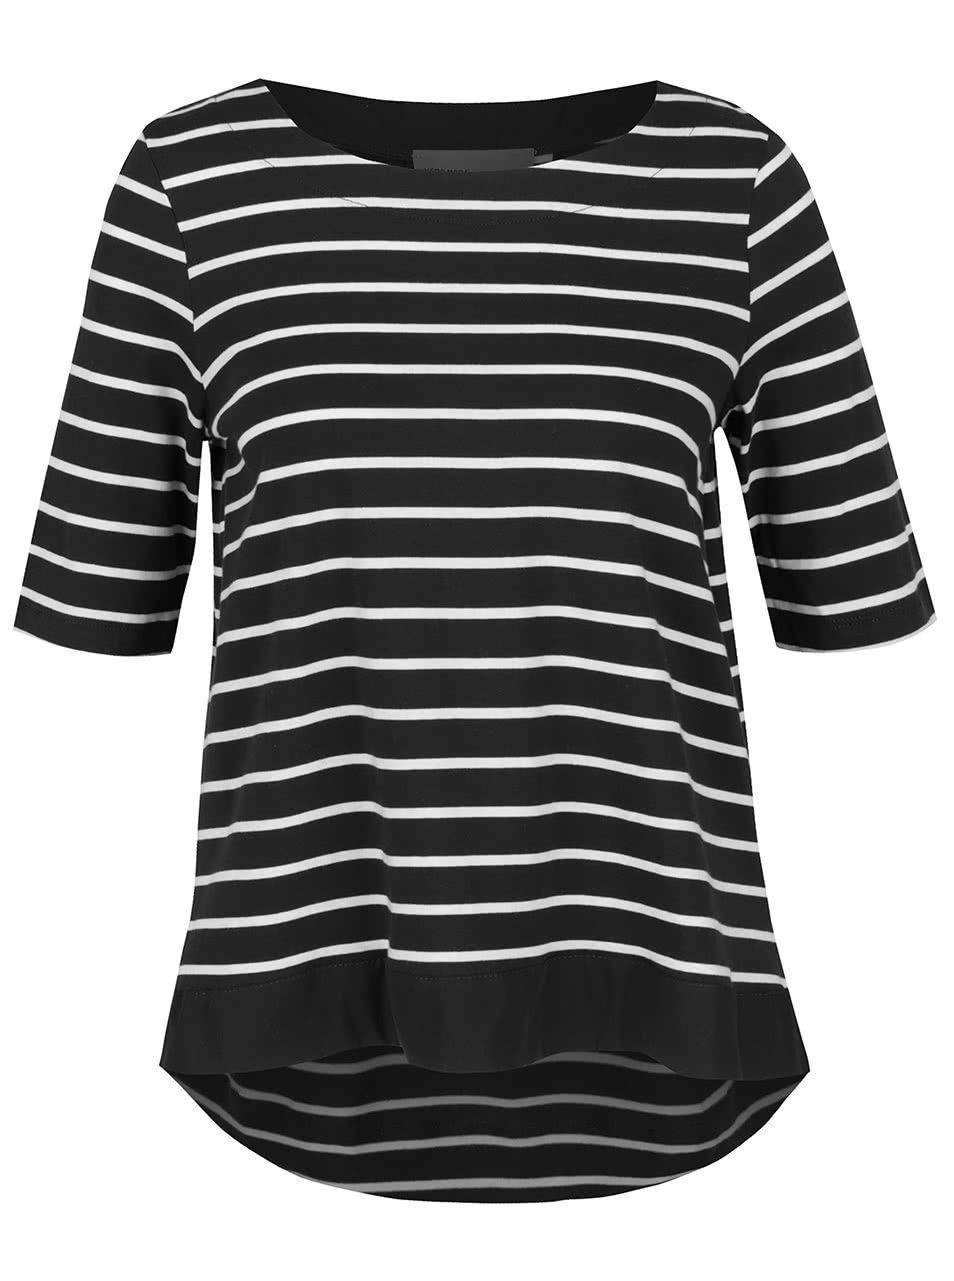 Bílo-černé pruhované tričko s 3/4 rukávy Vero Moda Sui